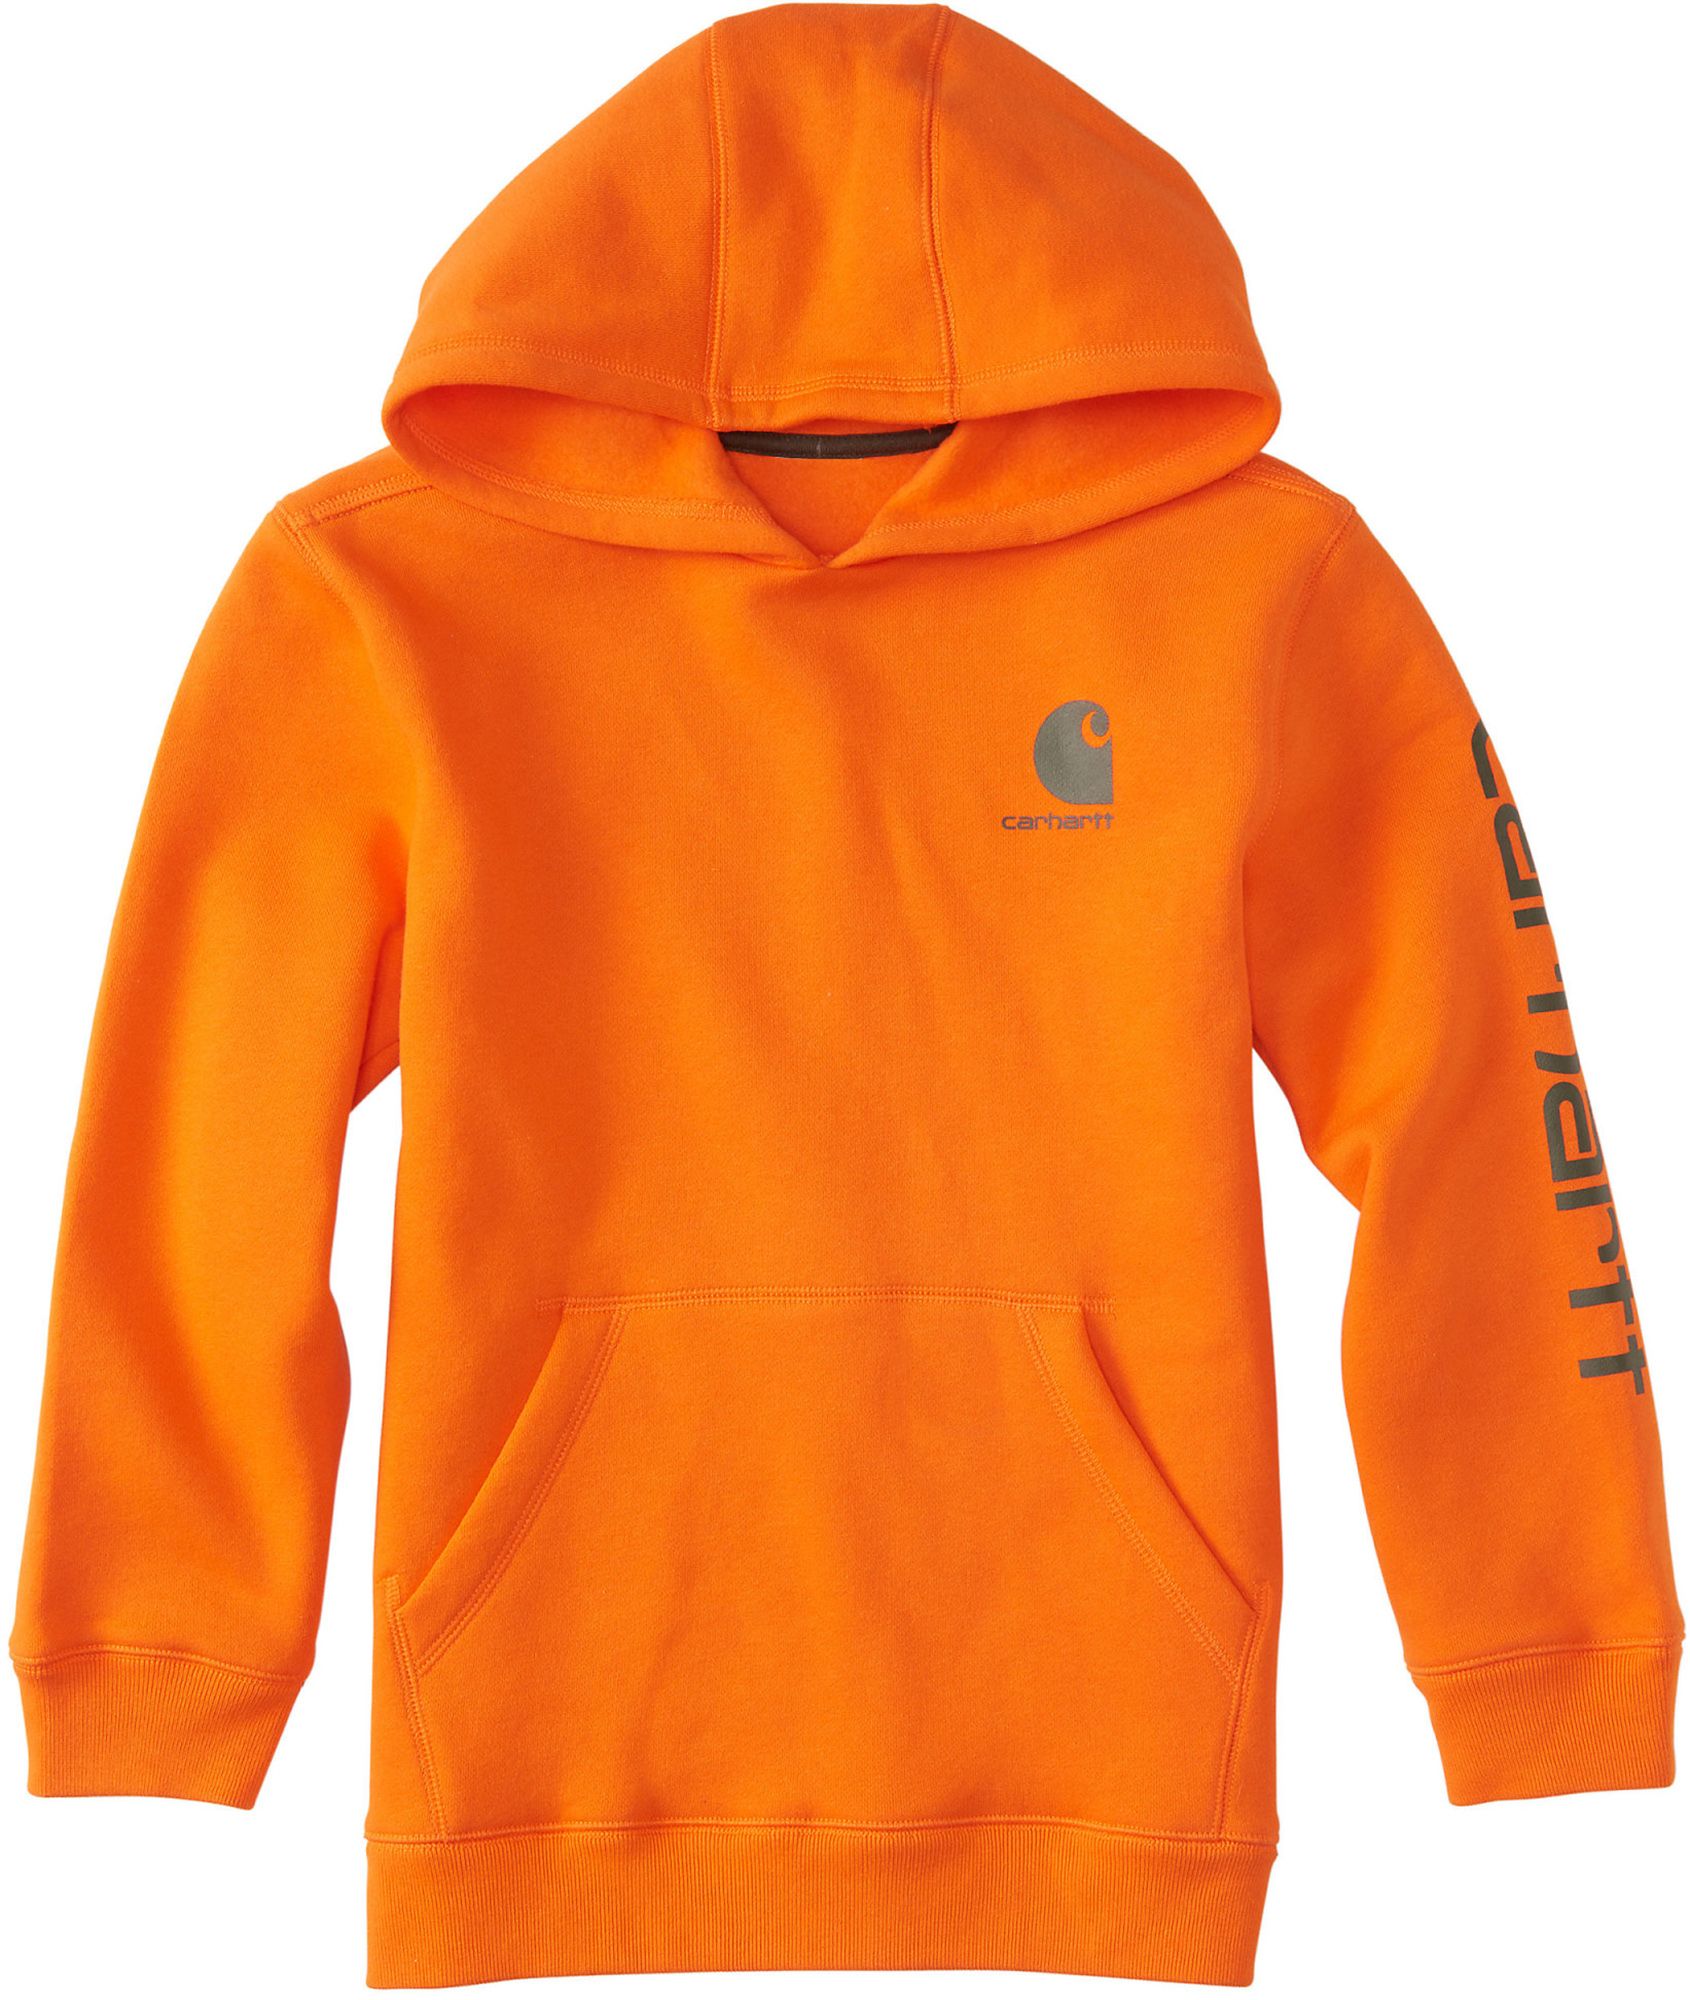 blaze orange under armour hoodie